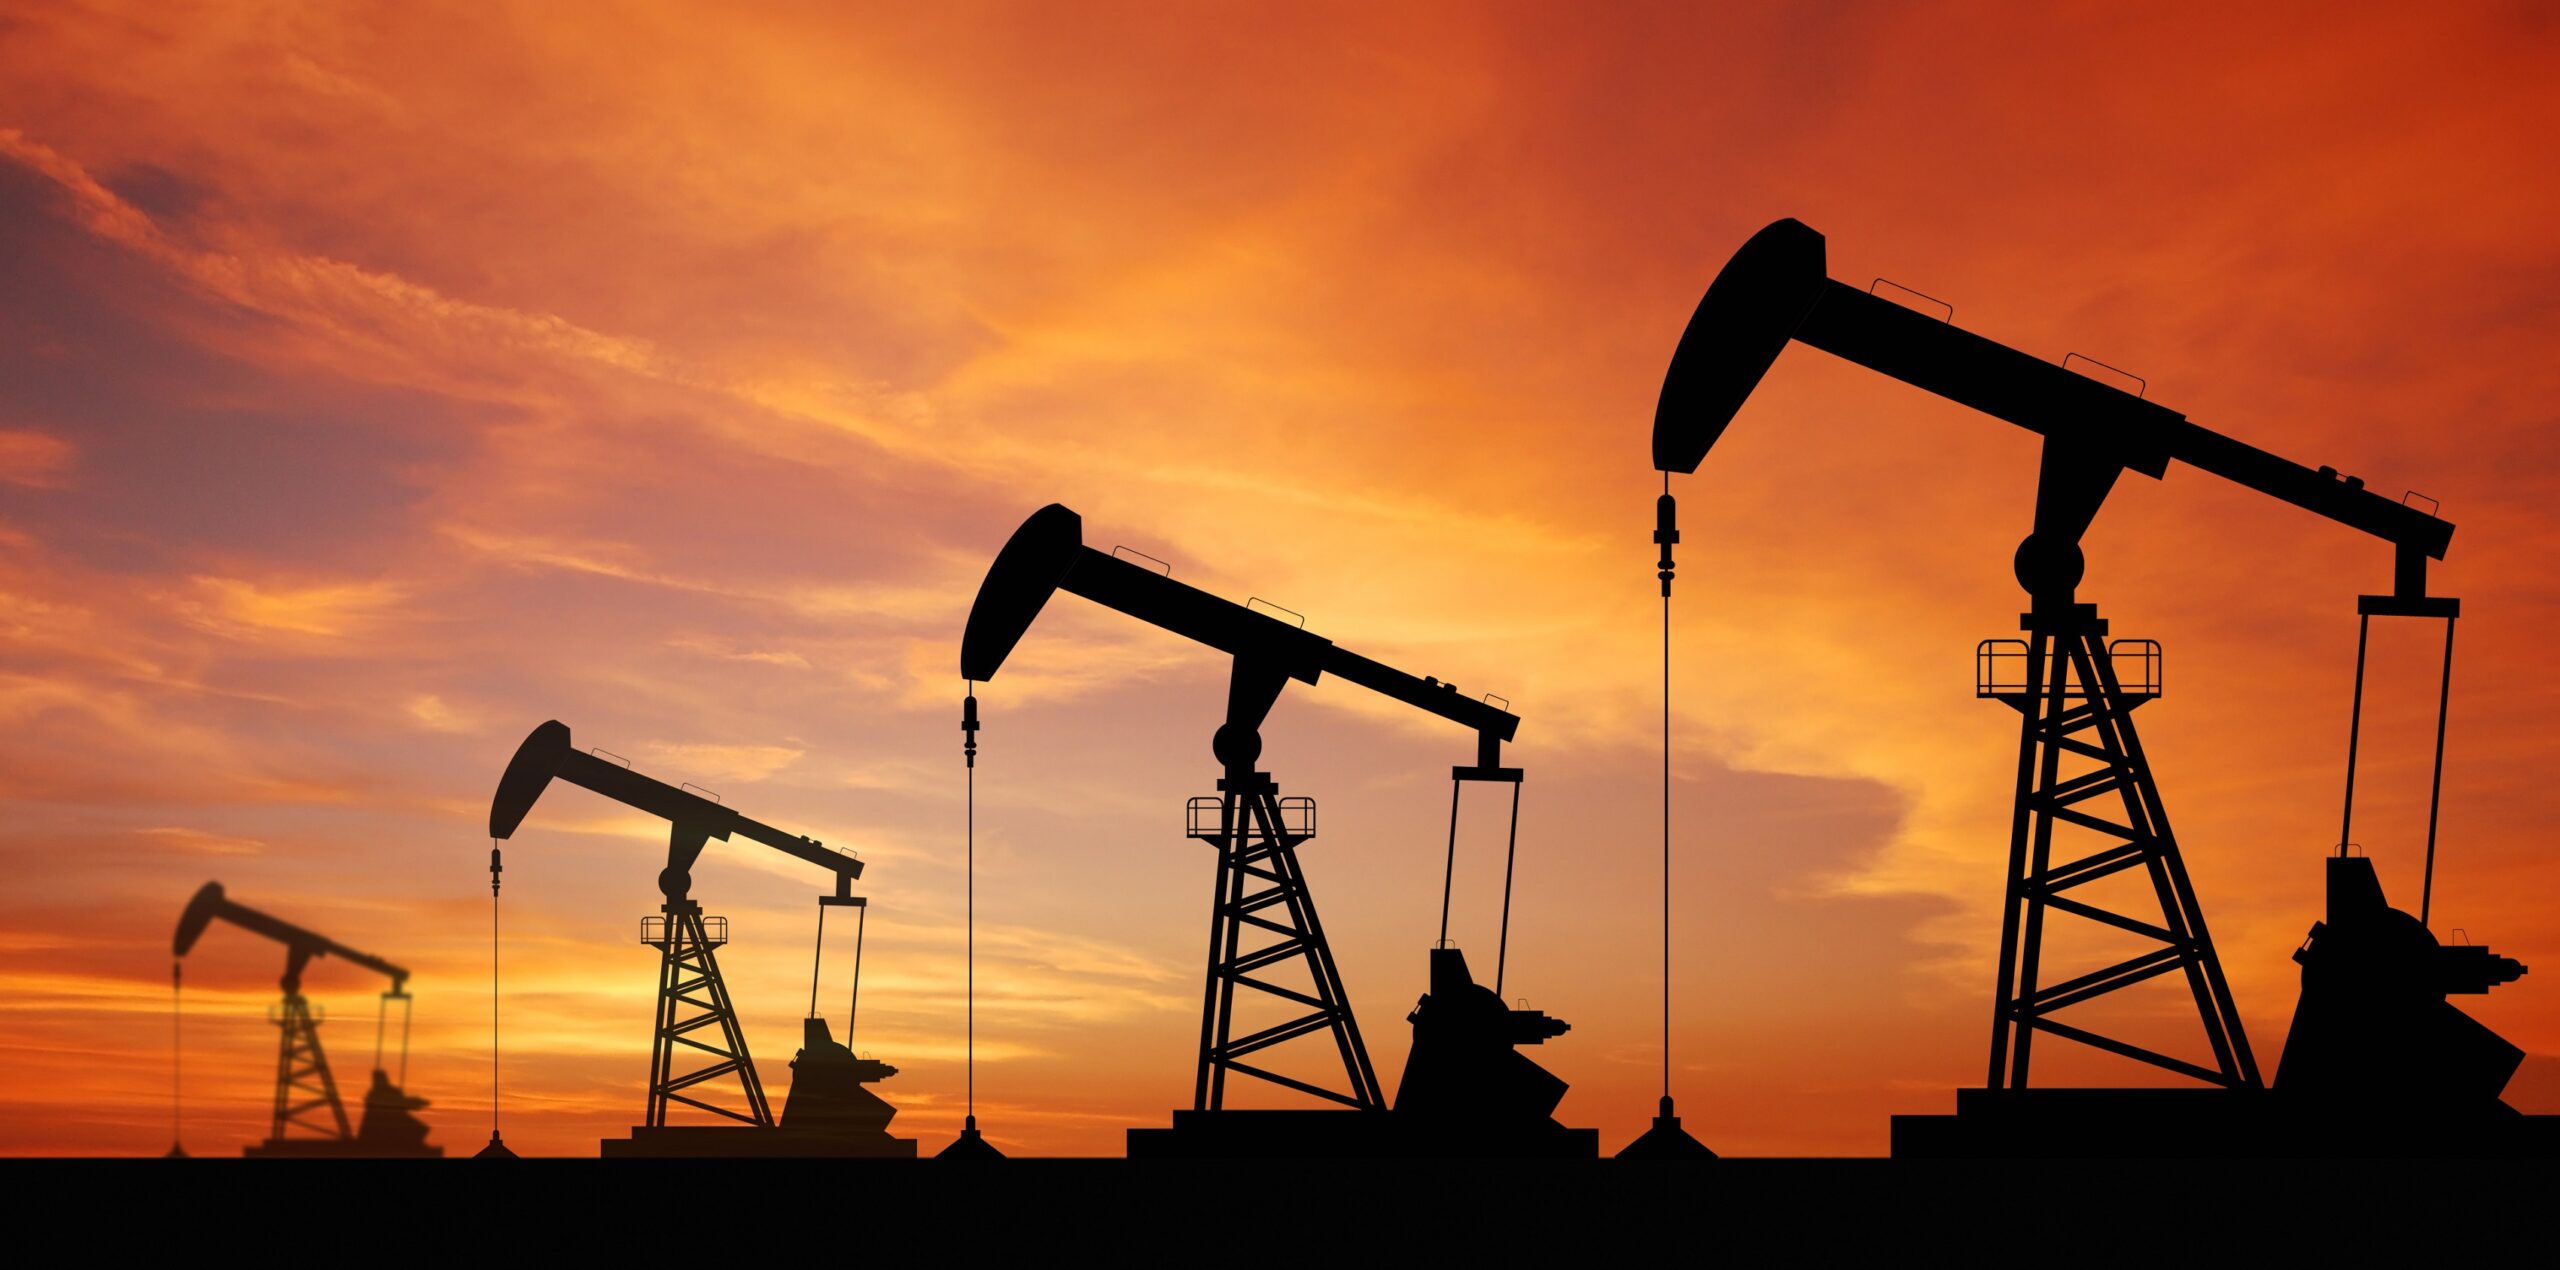 #COP26: Oil majors’ commitments fall short